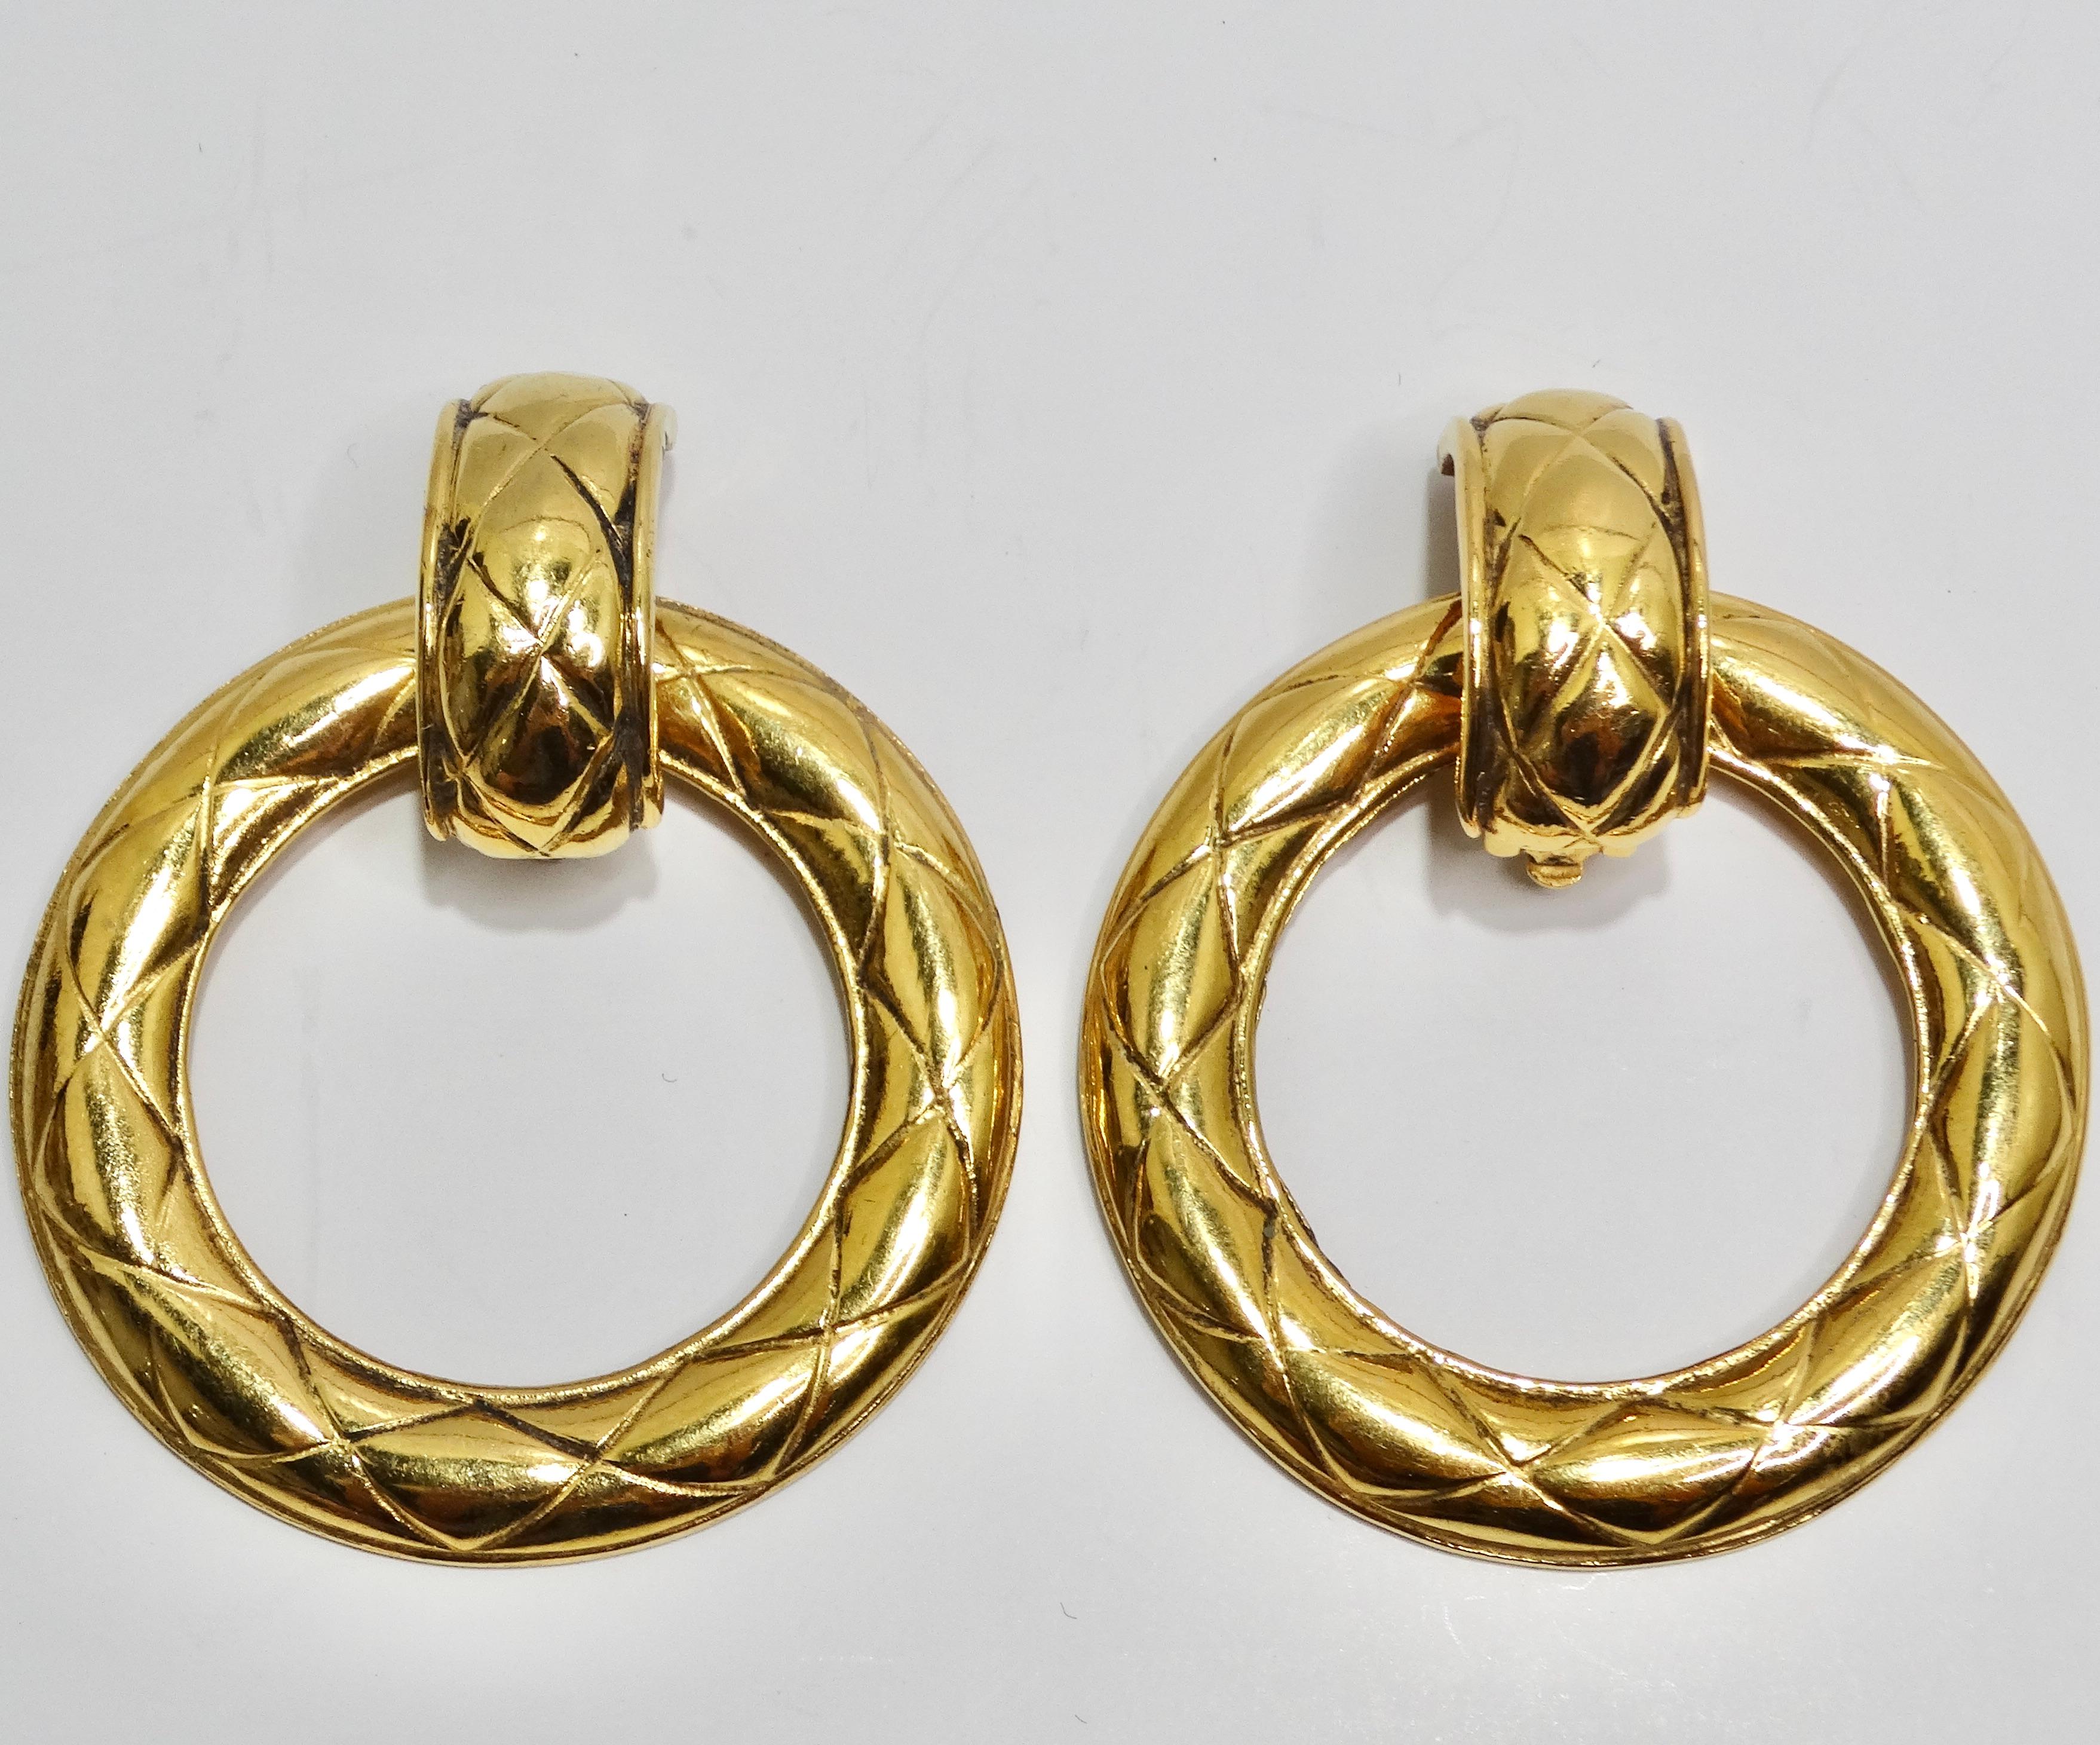 Gönnen Sie sich die zeitlose Eleganz von Chanel mit diesen exquisiten Chanel 1980s Gold Tone Quilted Hoop Earrings. Diese Statement-Ohrringe sind ein echtes Zeugnis des ikonischen Chanel-Stils, mit luxuriösem goldfarbenem Finish und dem